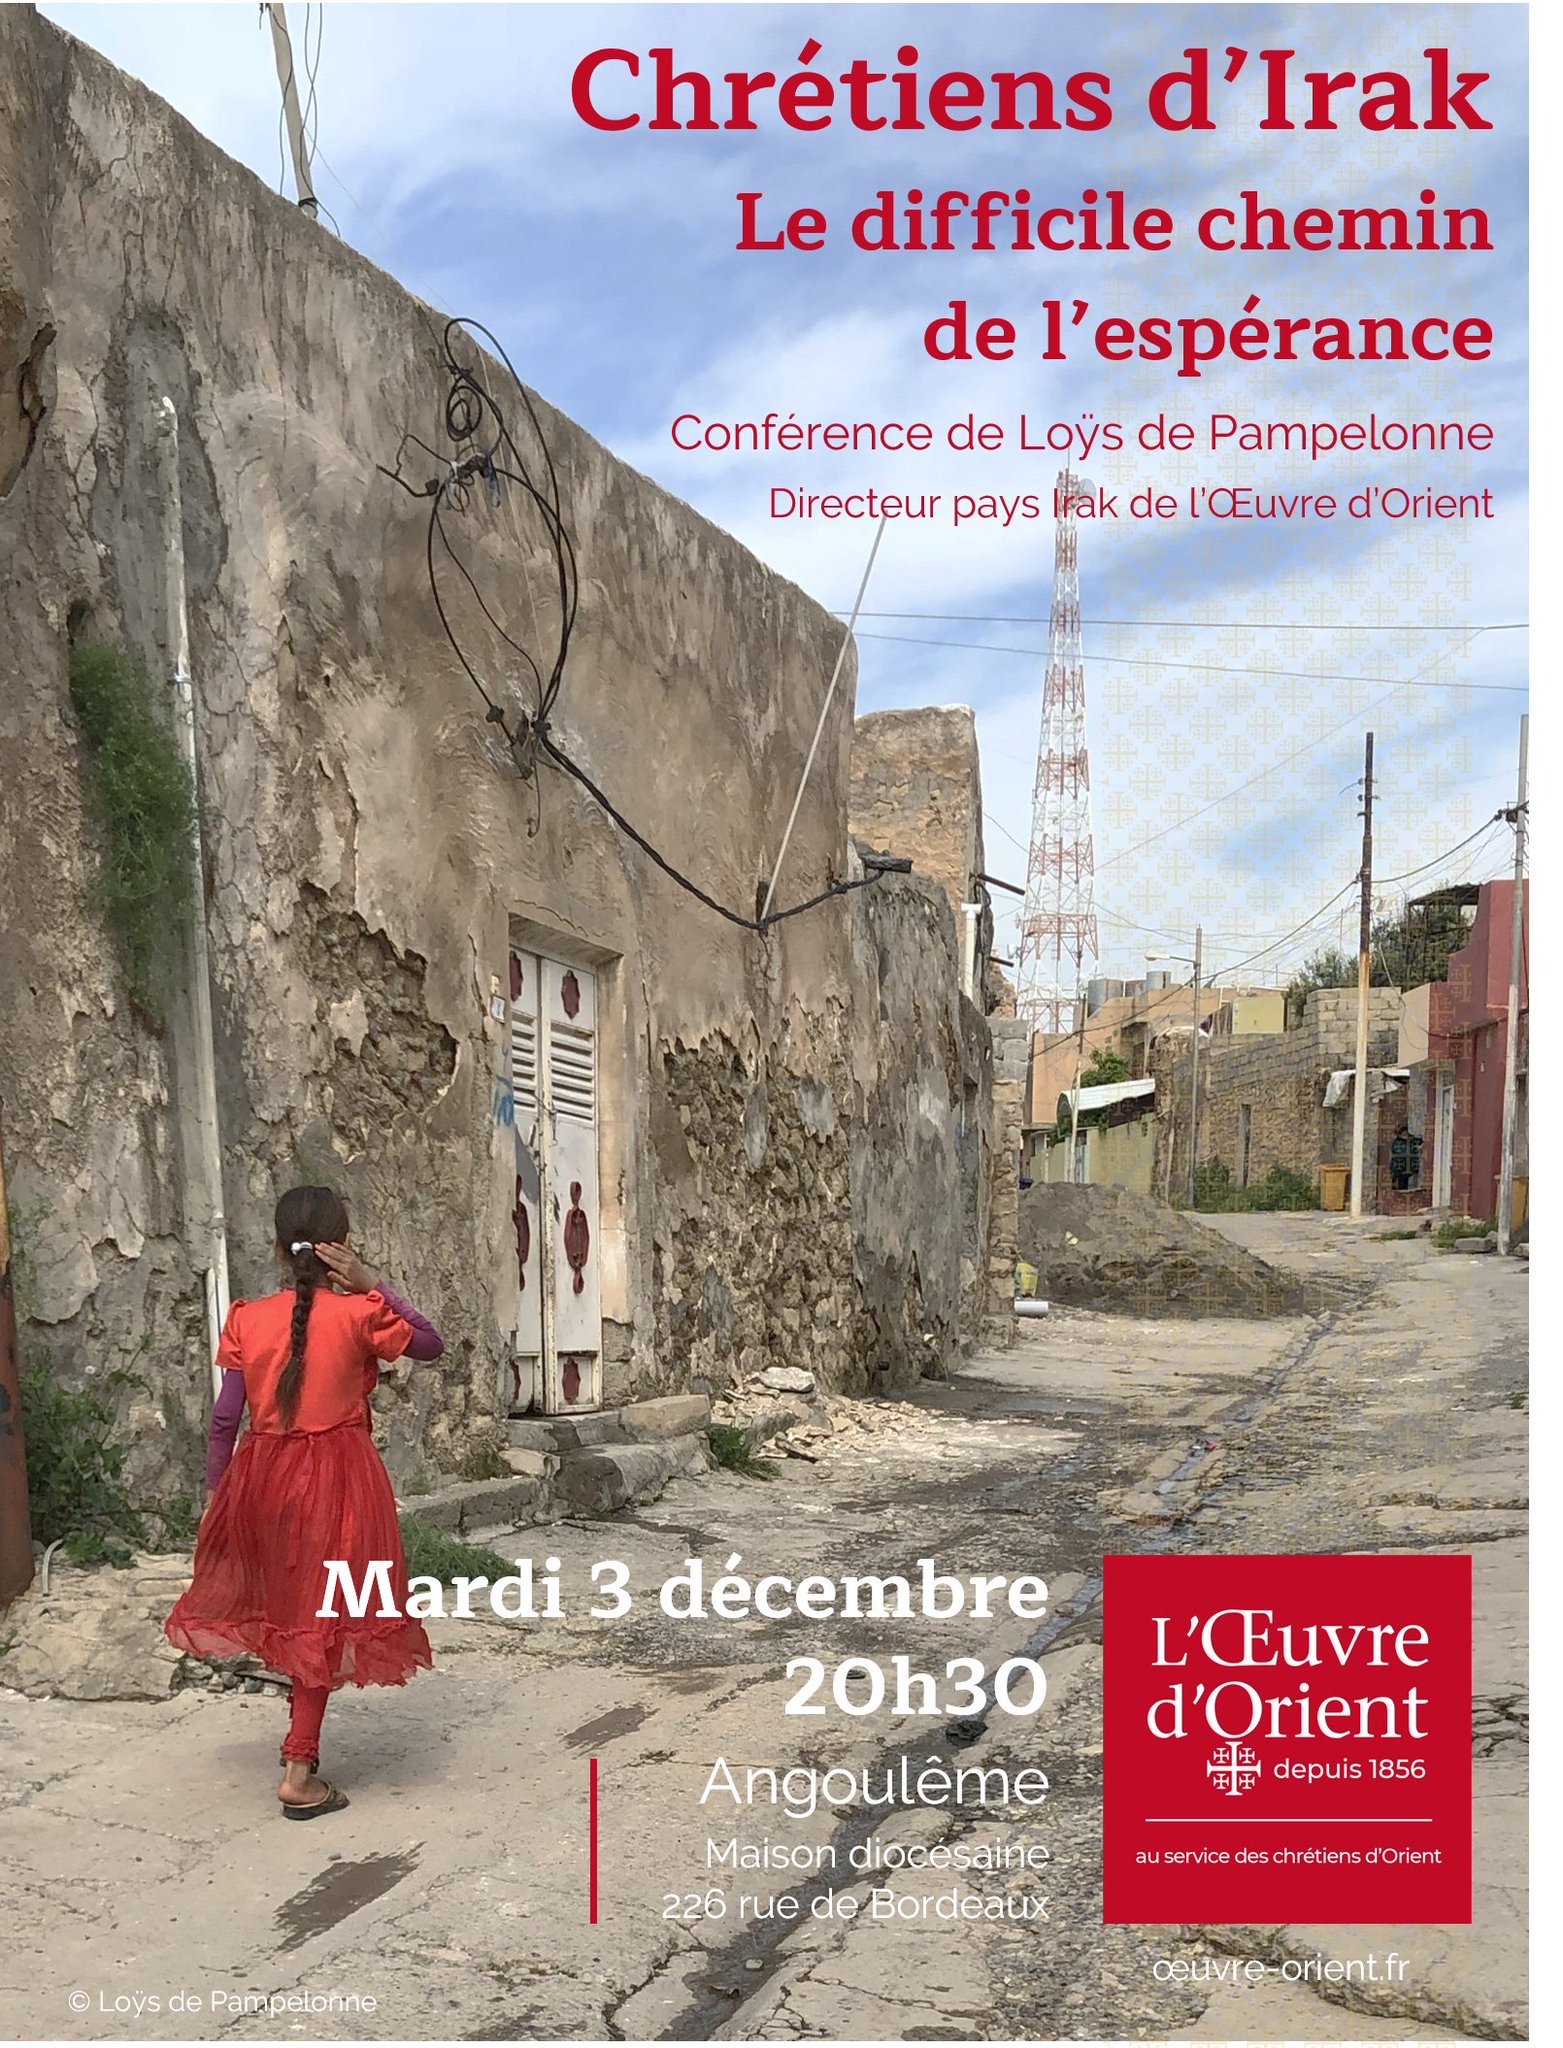 Angoulême : conférence de l’Œuvre d’Orient sur les chrétiens d’Irak